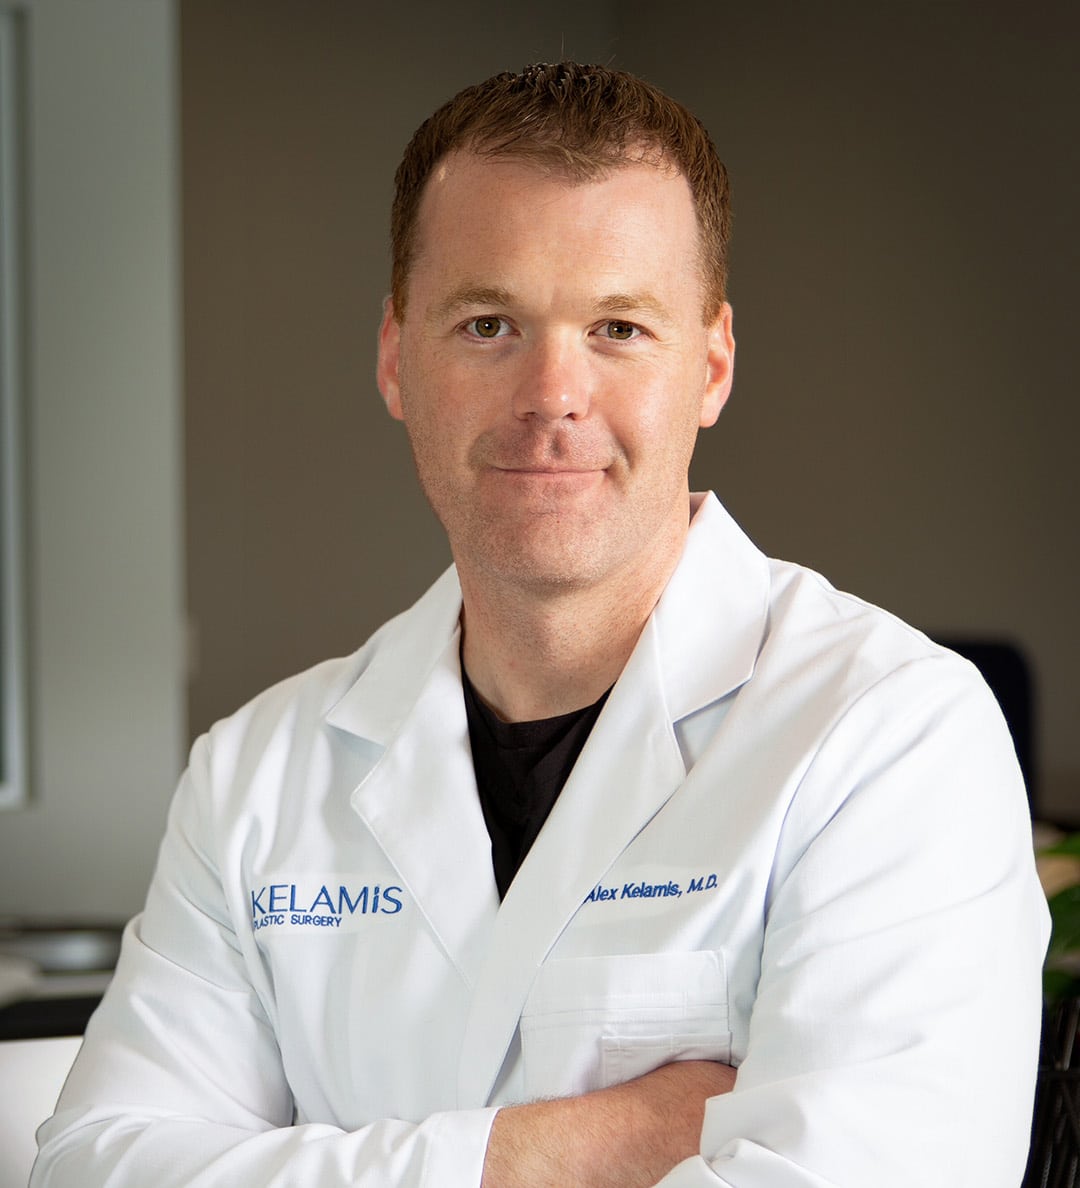 Dr. J Alex Kelamis - Plastic Surgeon in Nortwest Arkansas